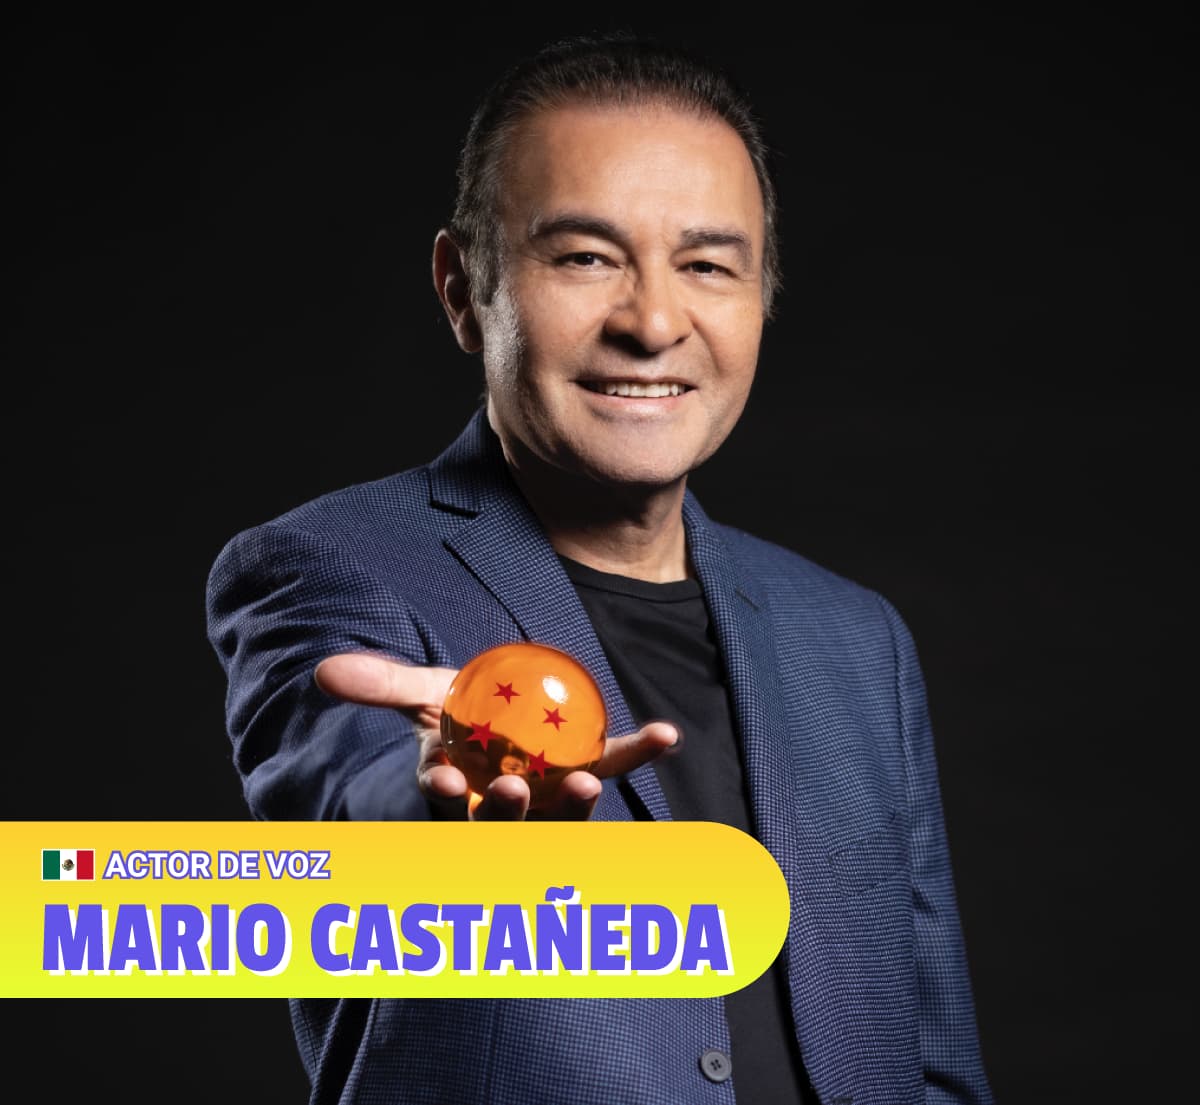 Mario Castañeda - Actor de Voz